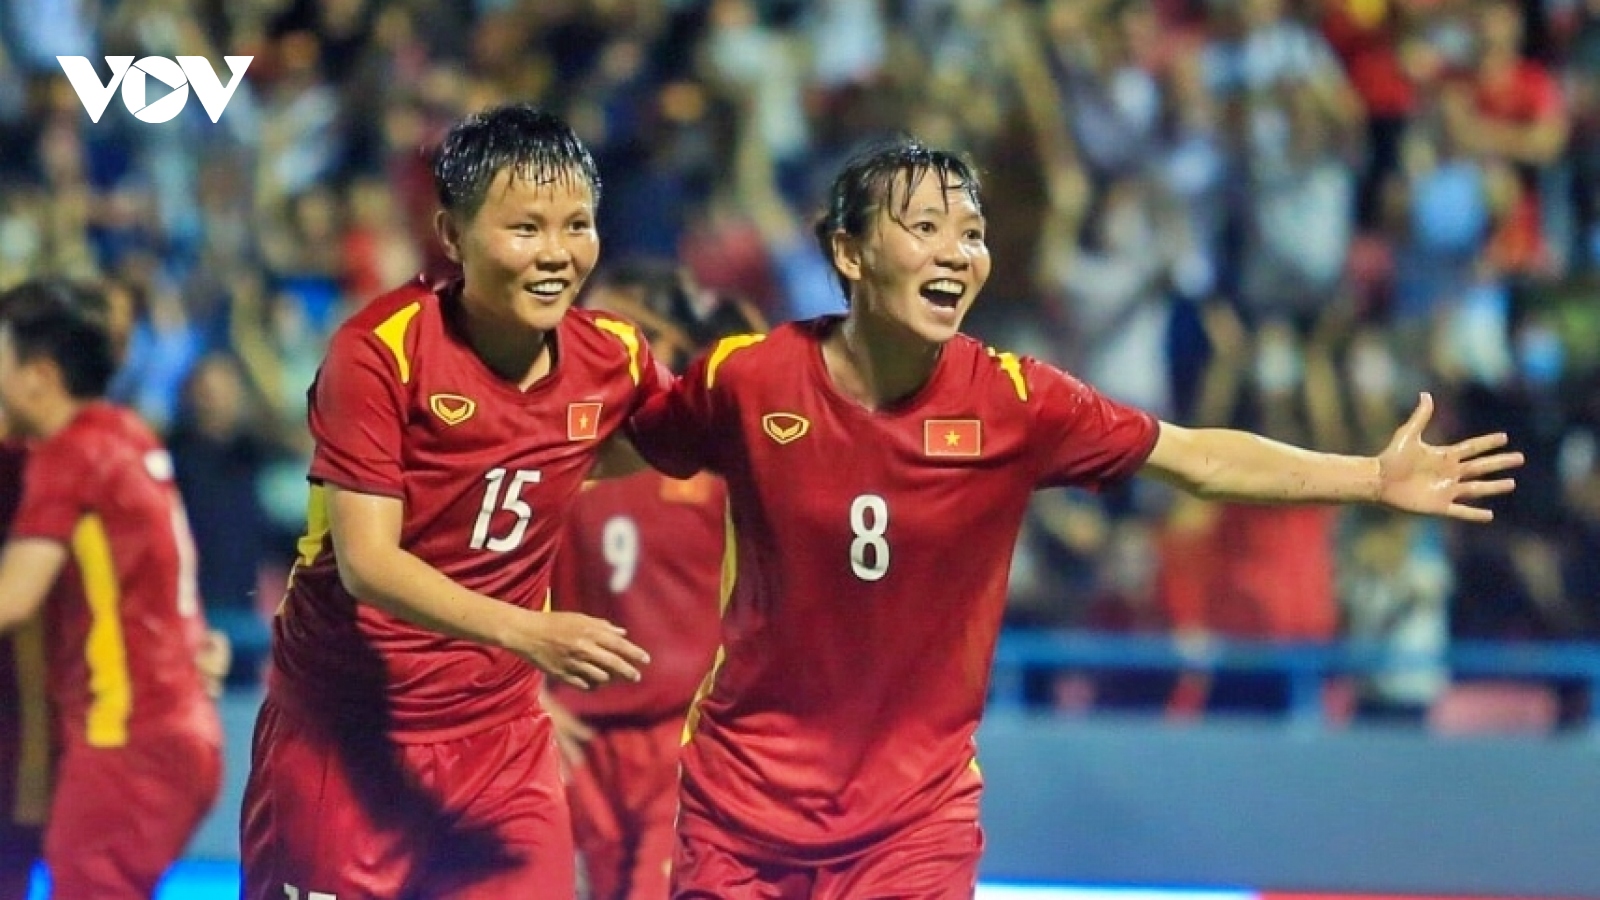 Tin bóng đá 9/8: Thùy Trang và Huỳnh Như vắng mặt ở ĐT nữ Việt Nam